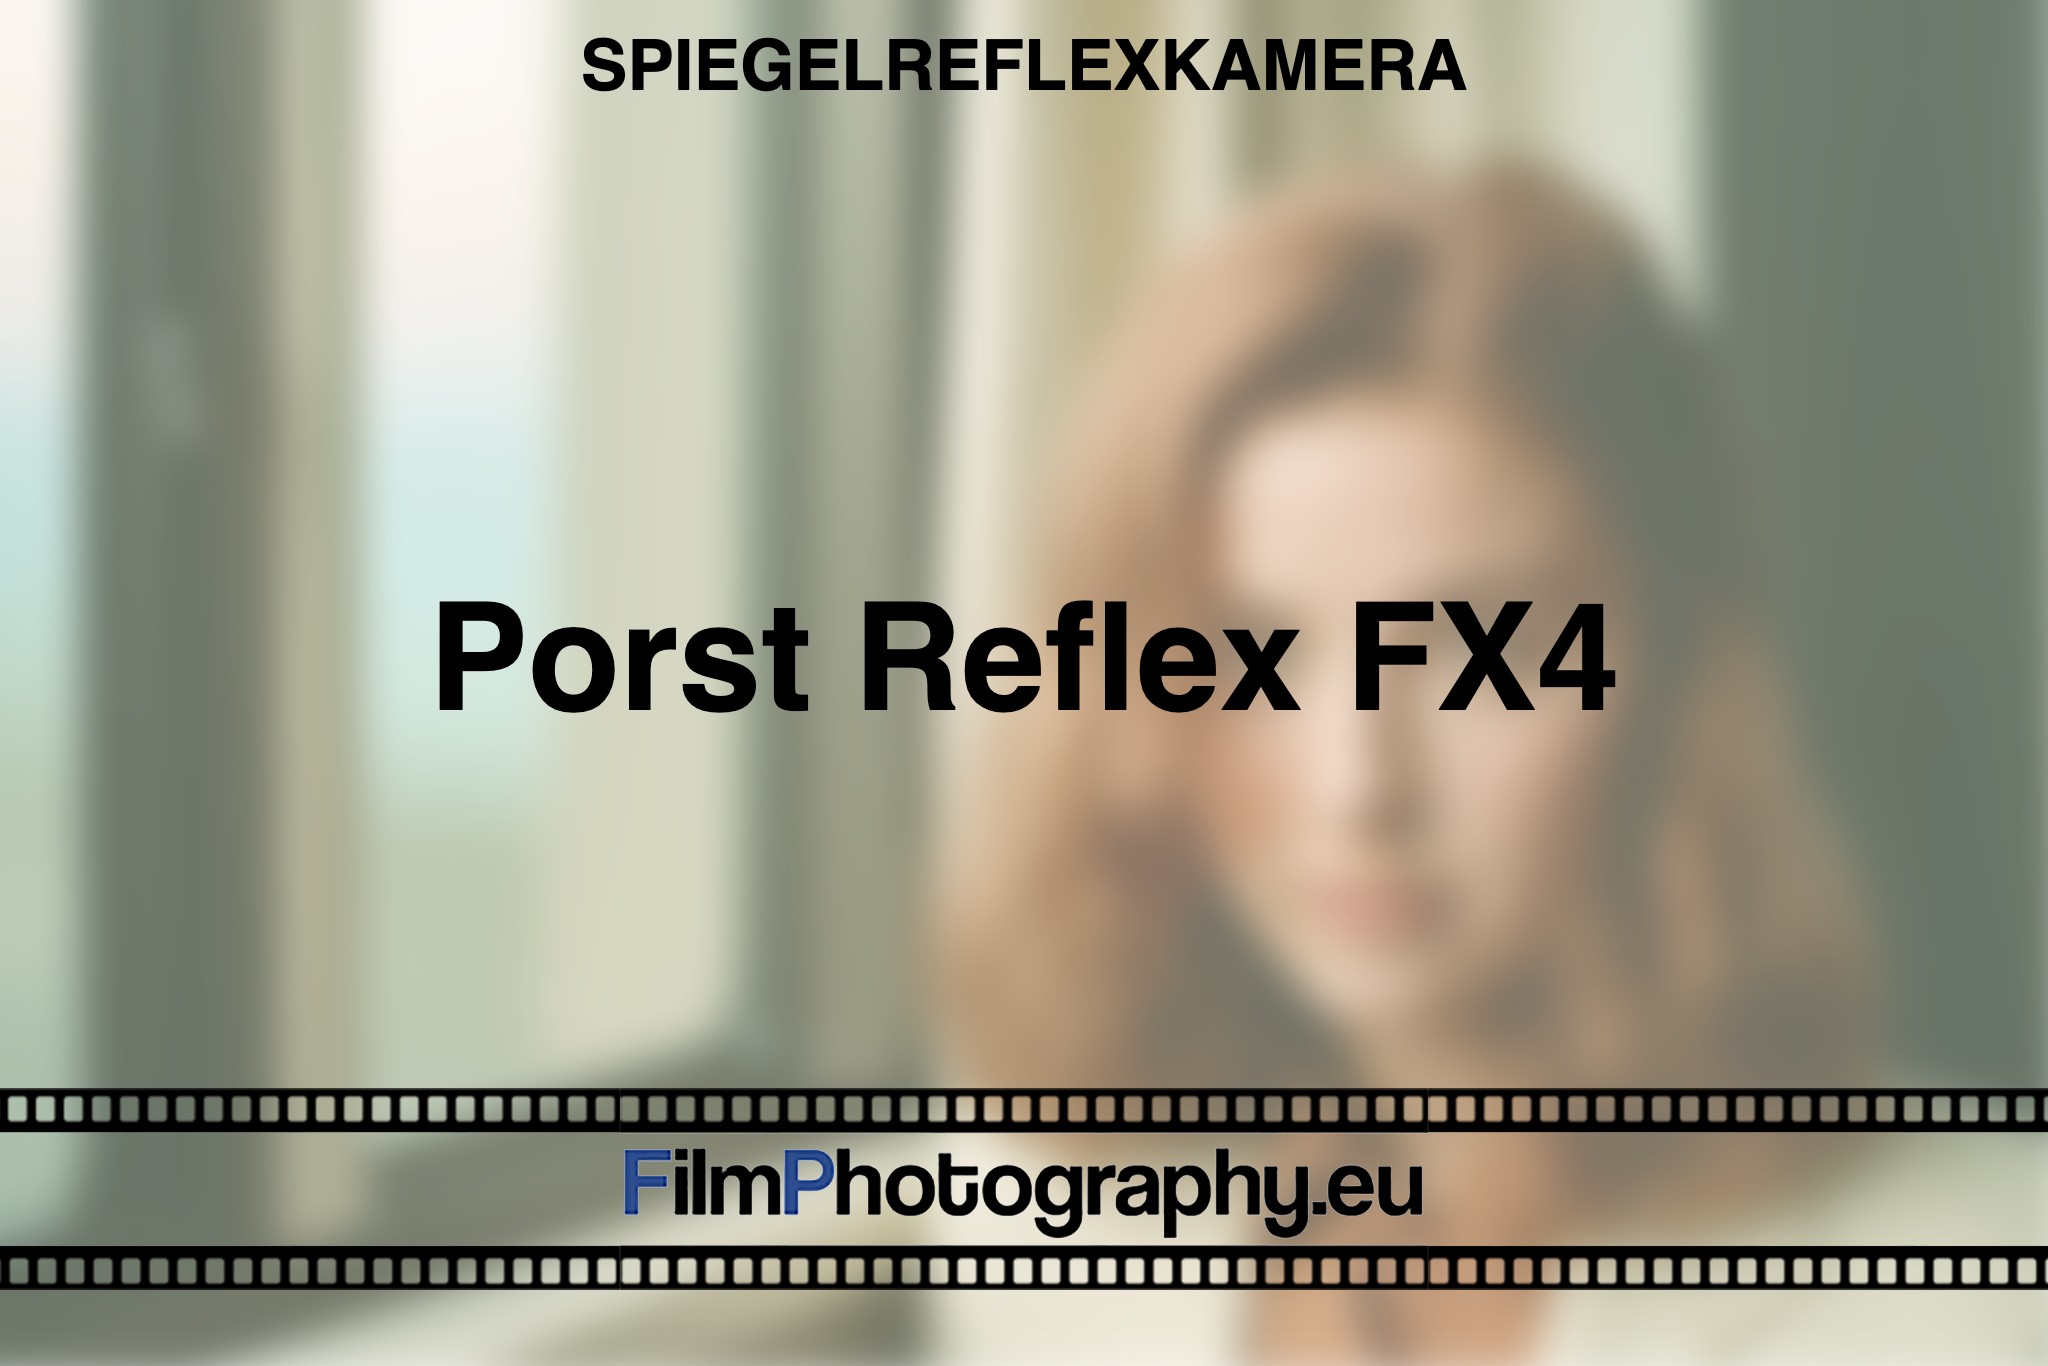 porst-reflex-fx4-spiegelreflexkamera-bnv